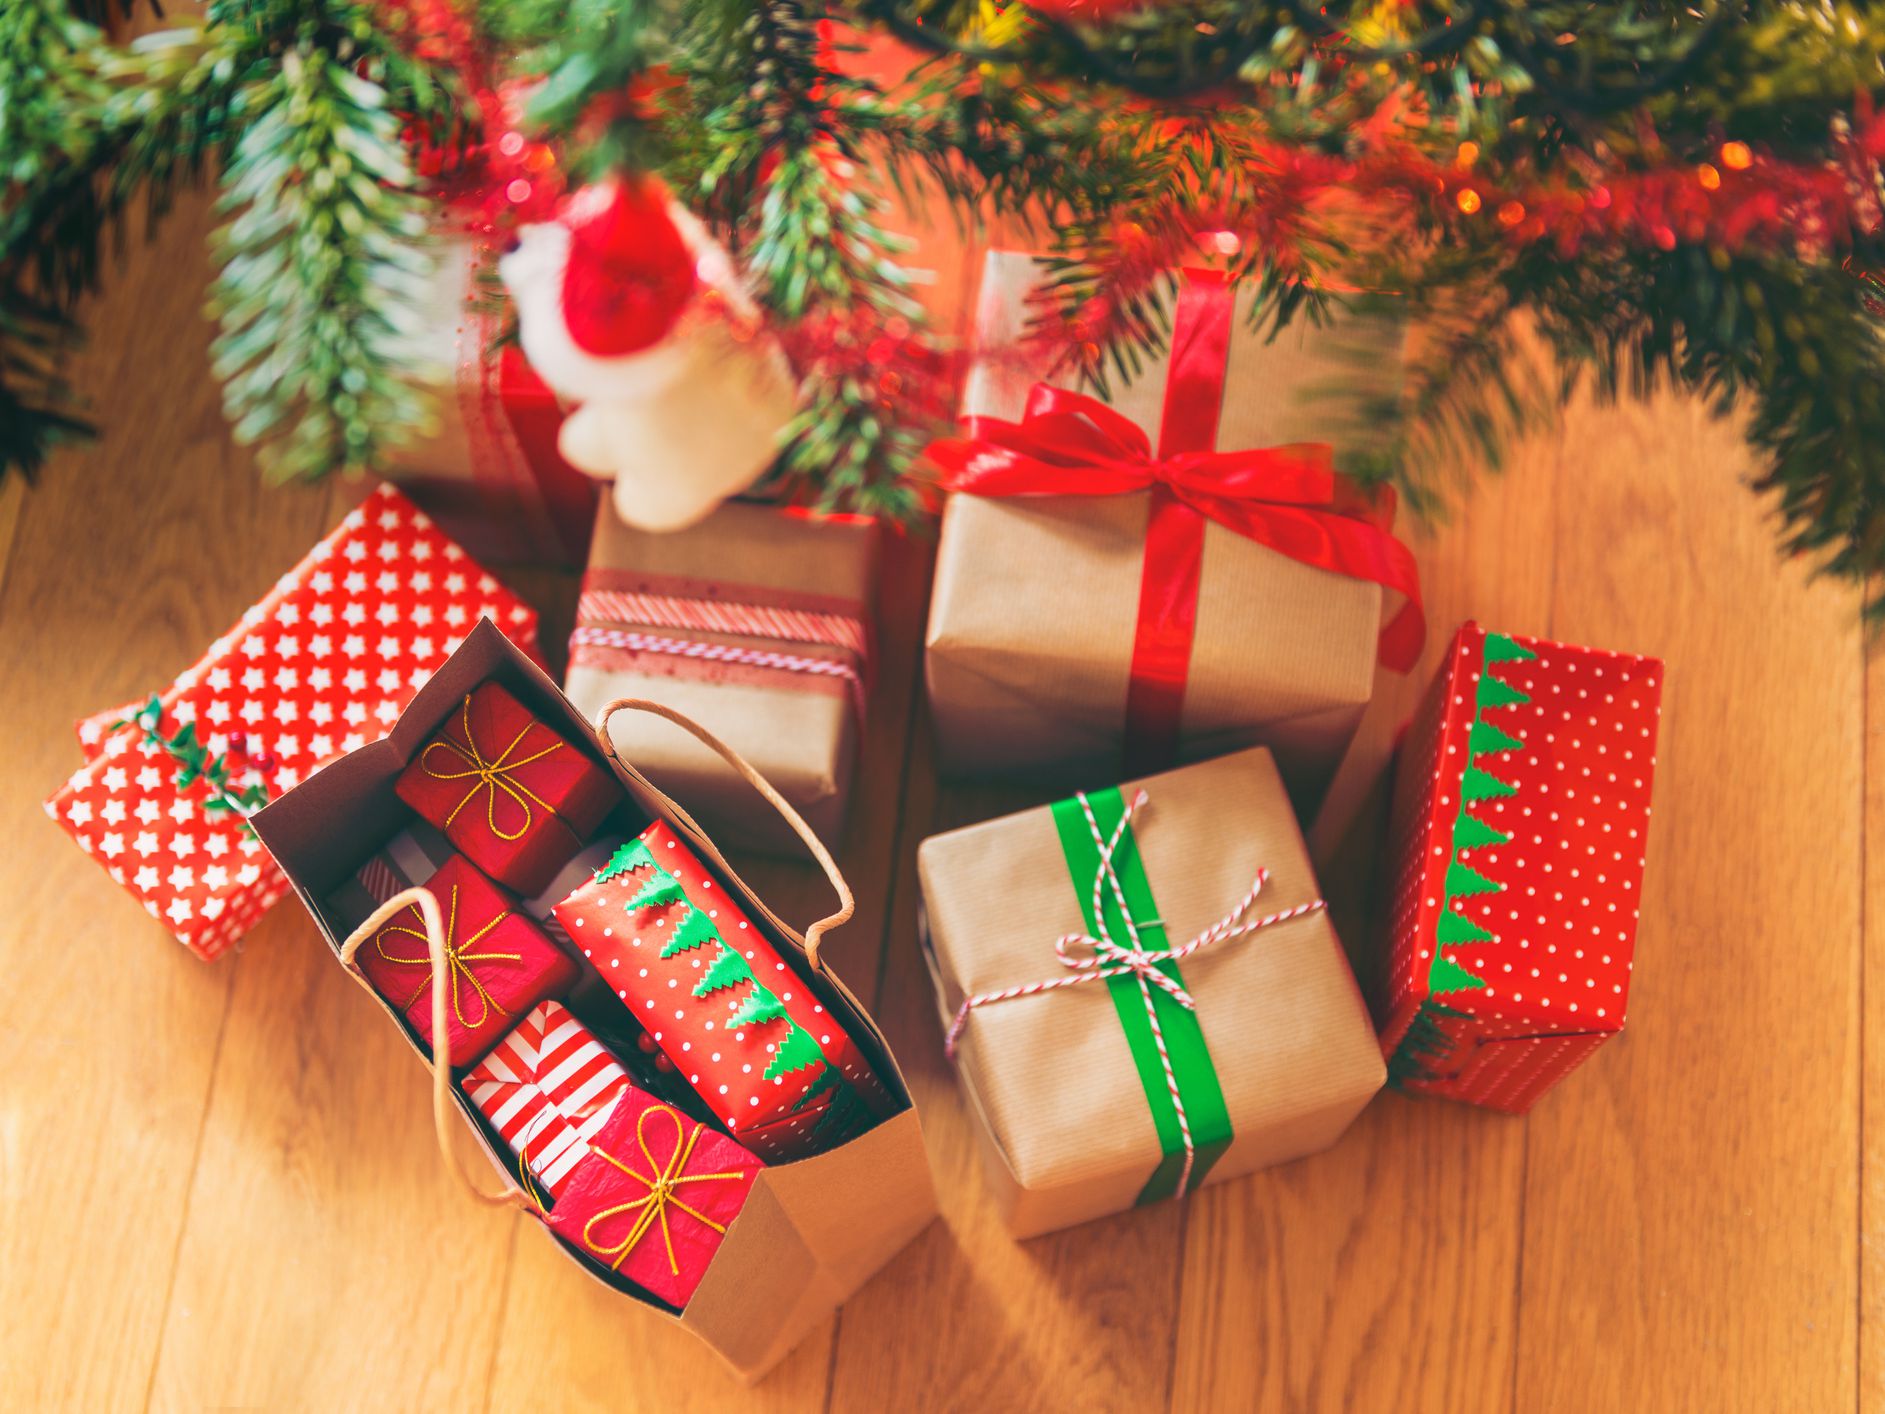 Top 5 cadouri last minute! Acestea sunt darurile cu care nu dai greși, pe care le poți achiziționa pe ultima sută de metri